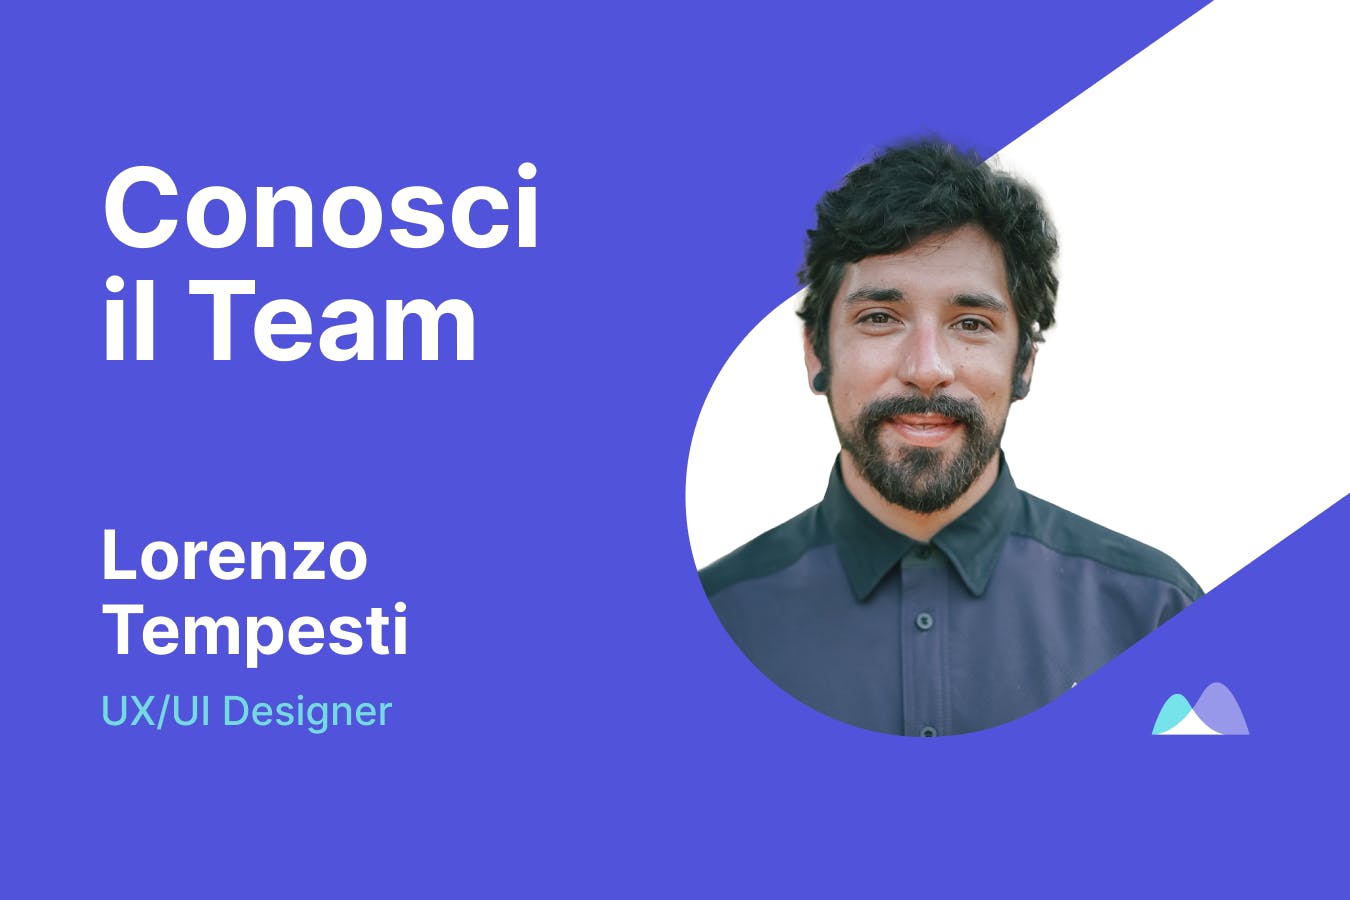 Lorenzo Tempesti, UX/UI Designer in Smartpricing